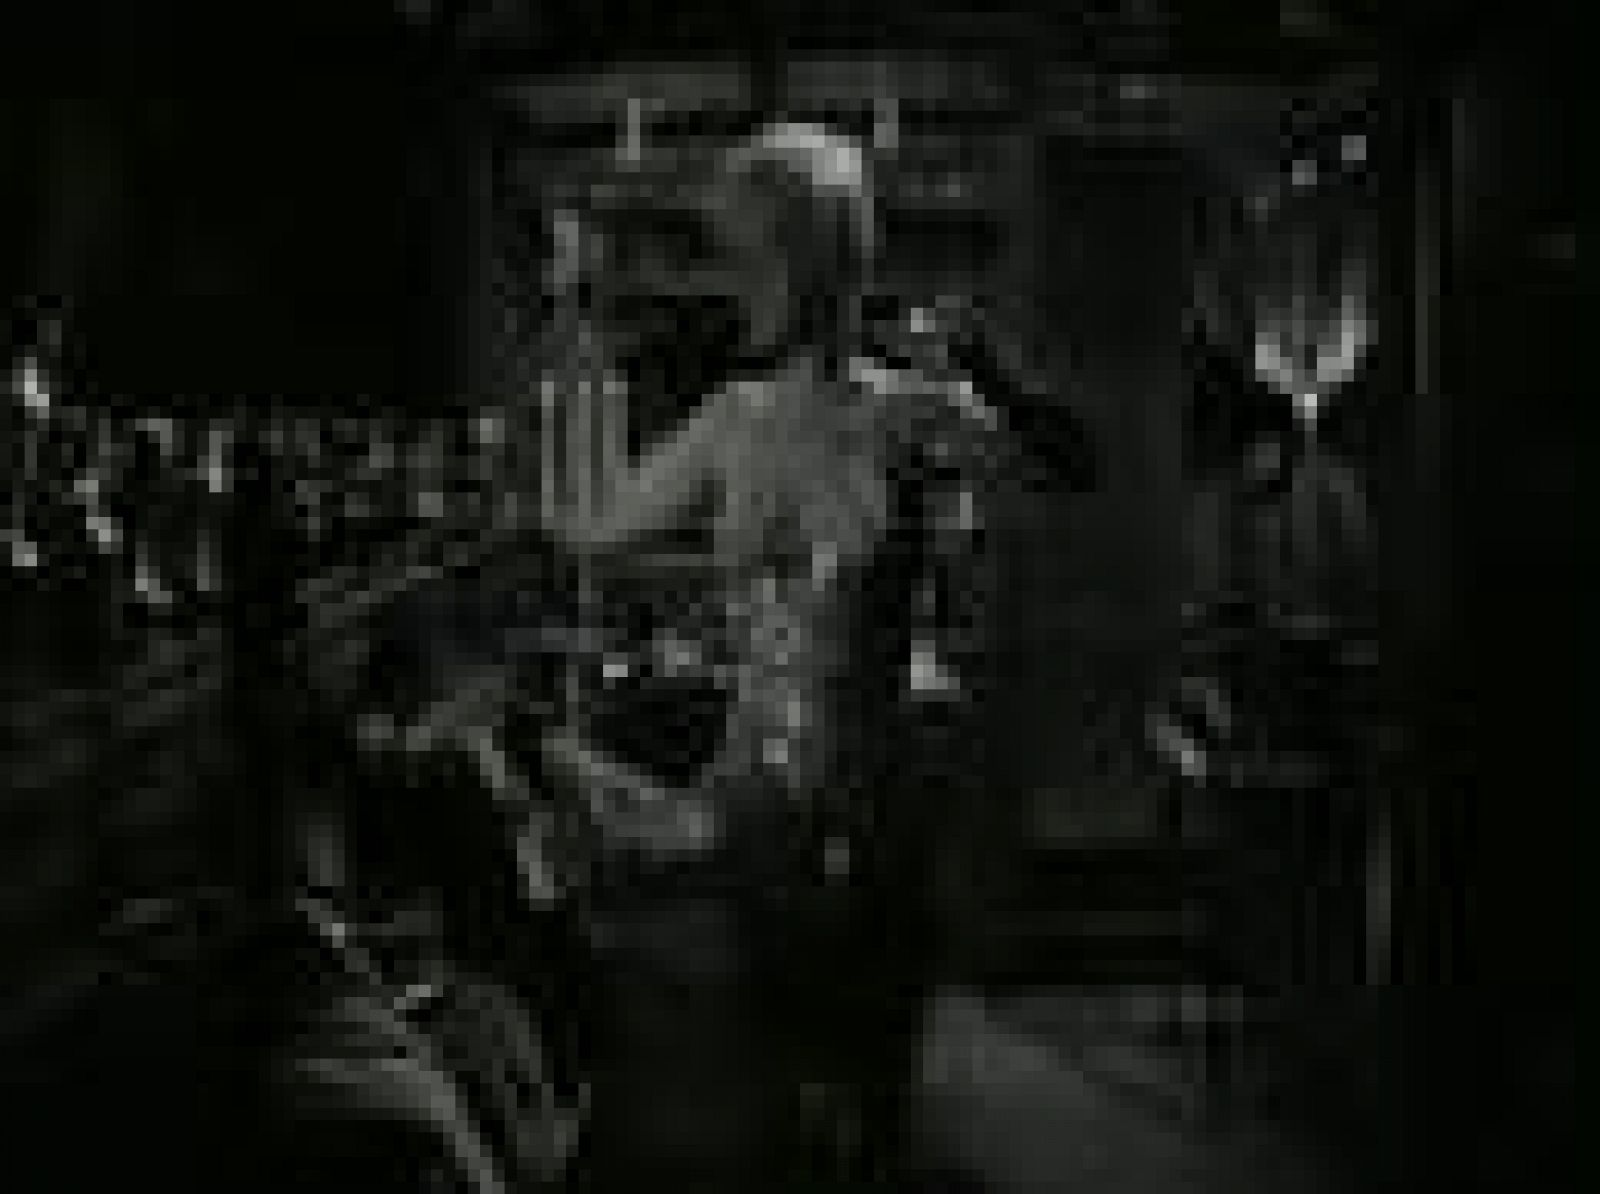 La "escena del tango", de 'Some like it hot' ('Con faldas y a lo loco'), de Billy Wilder, en la que los personajes interpretados por Tony Curtis y Marilyn Monroe protagonizan un tórrido beso, de una sensualidad inusual en aquella época.